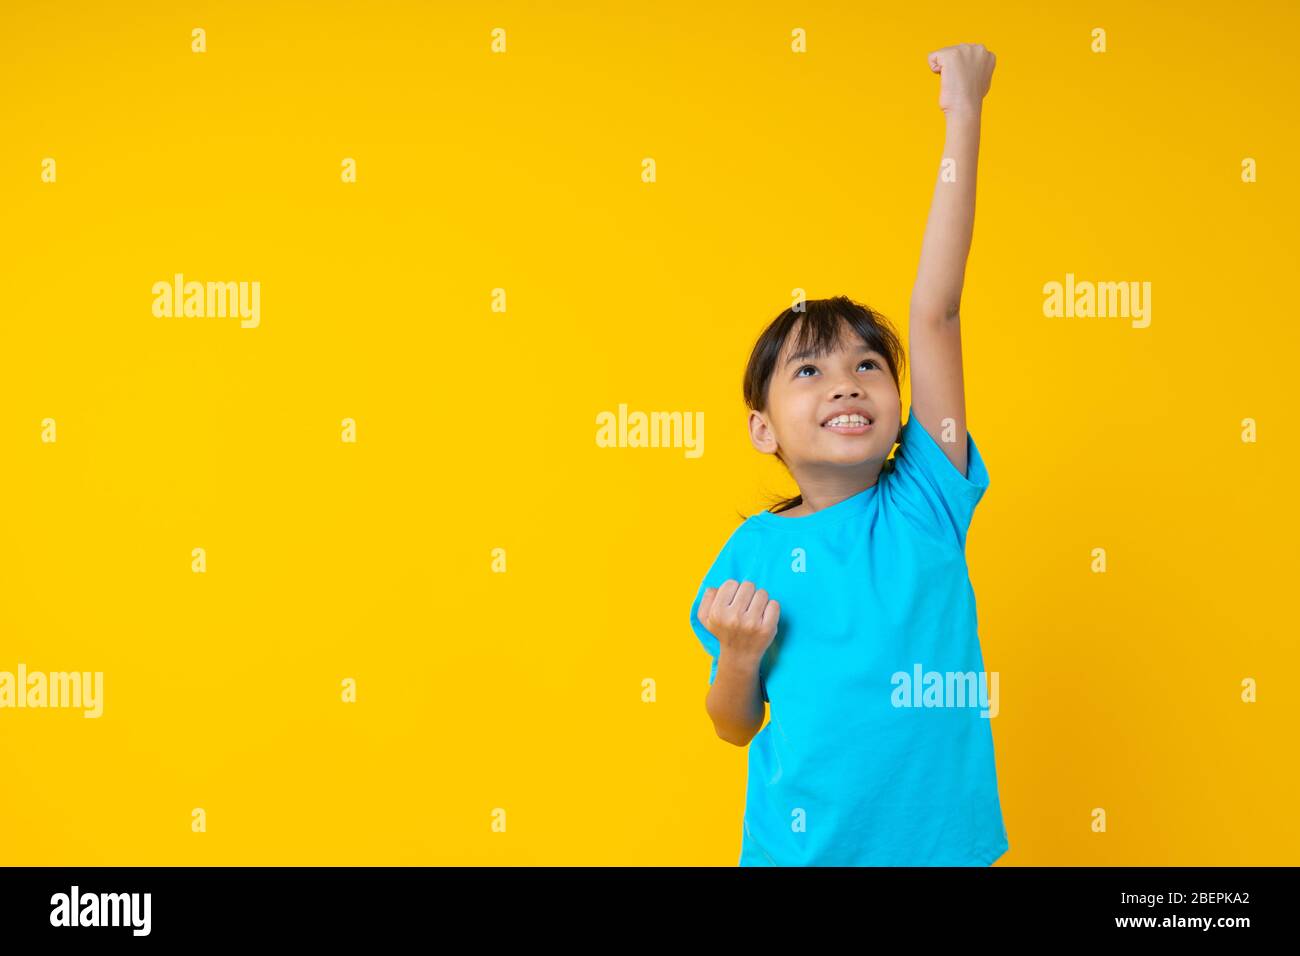 Allegro sorridente bambina tailandese mostra mano fino a volare, bambino asiatico contro muro giallo in studio Foto Stock